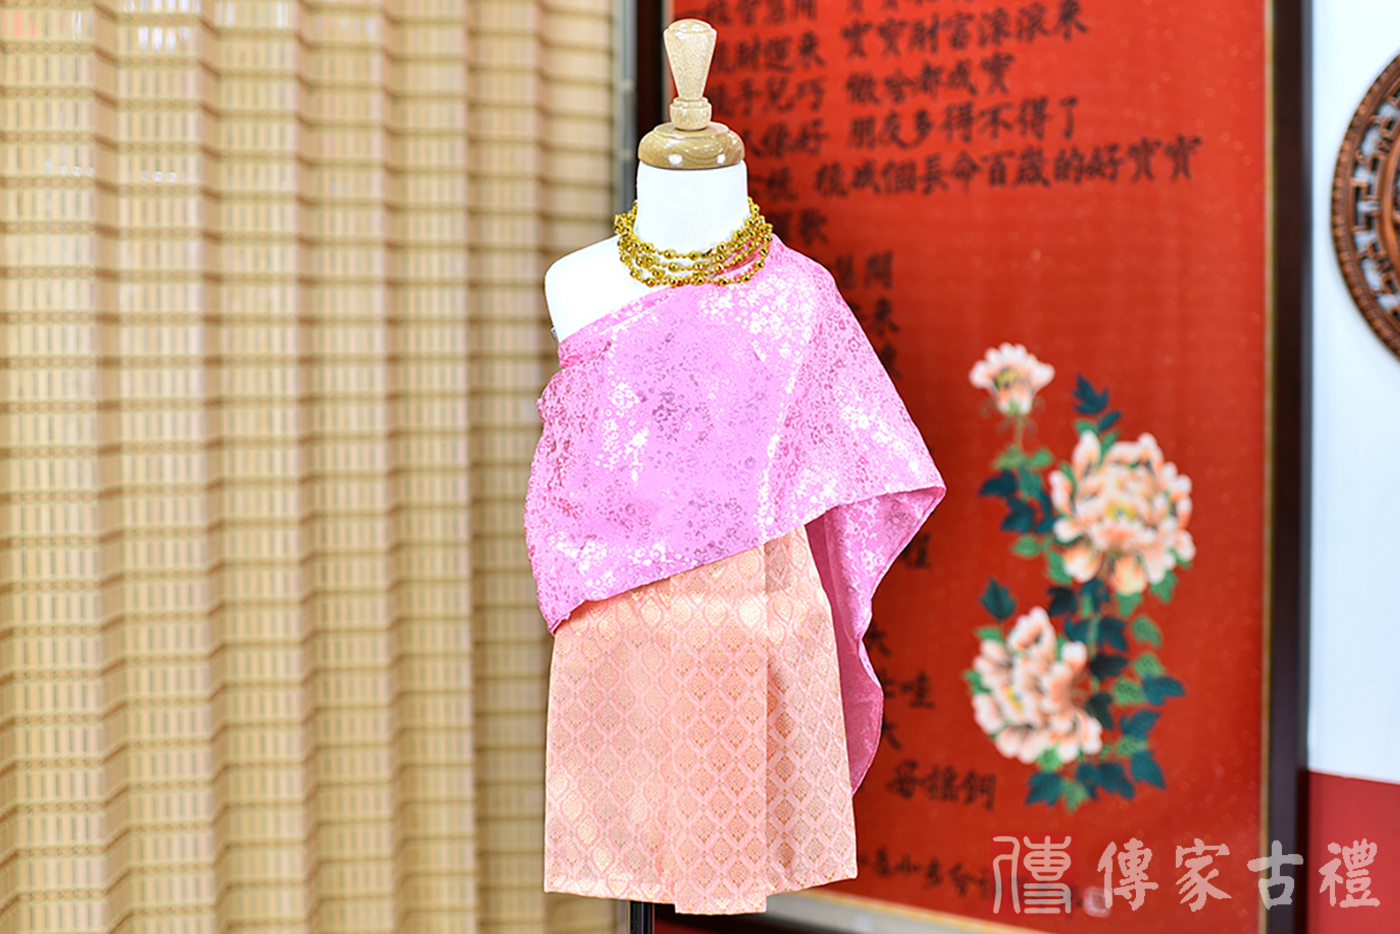 2024-02-22小孩皇室泰服古裝禮服。粉紅色的披肩上衣搭配粉橘色泰國圖案紋路裙裝的泰式古裝禮服。照片集